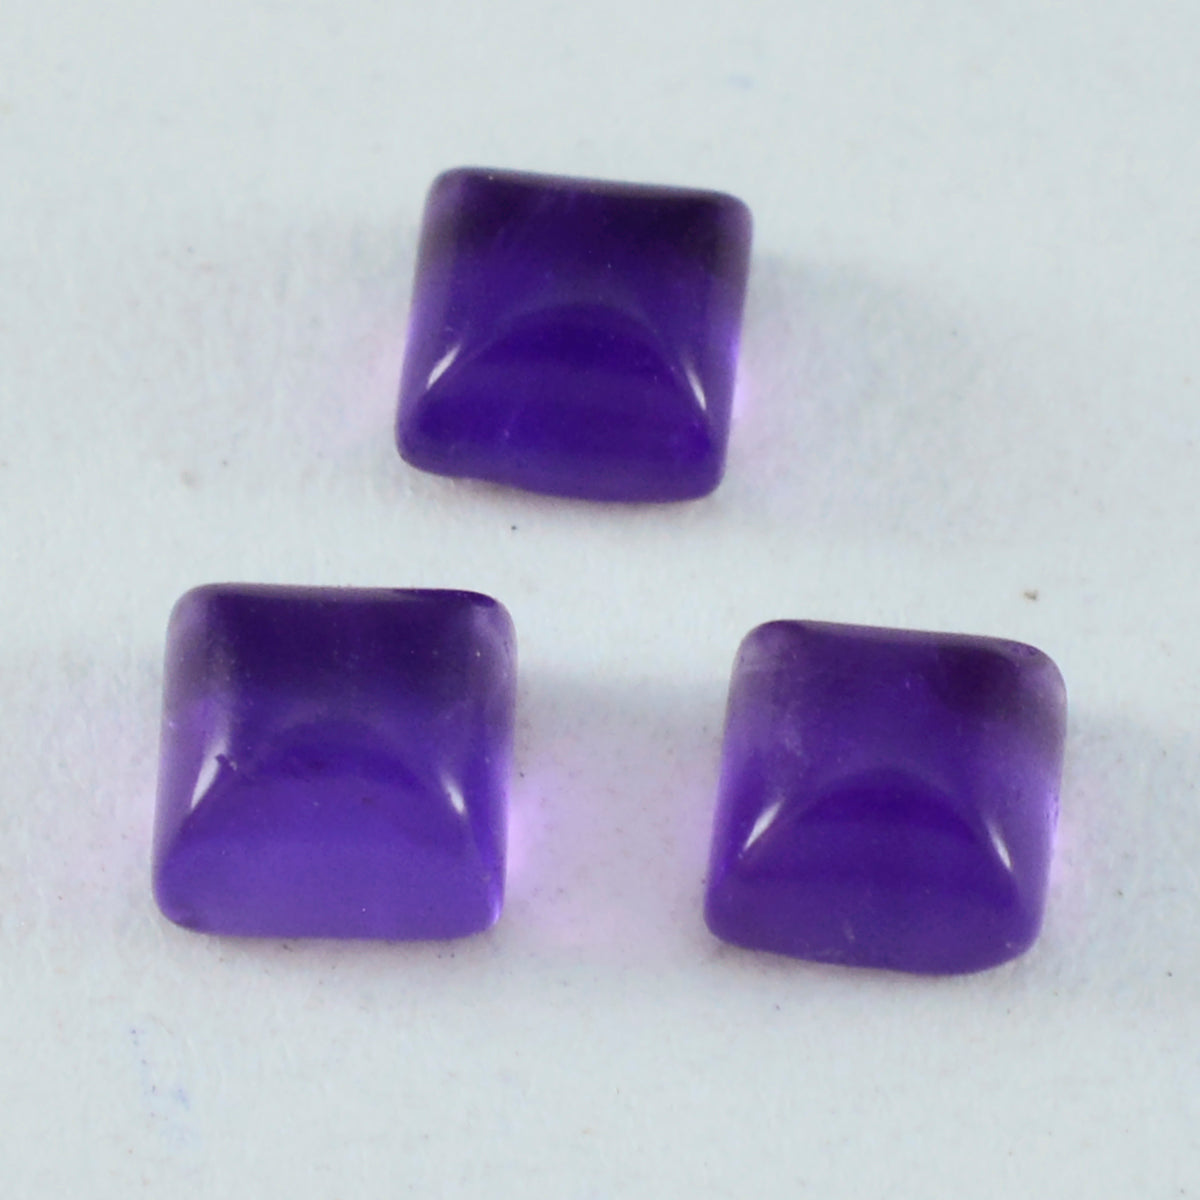 Riyogems 1 Stück lila Amethyst-Cabochon, 8 x 8 mm, quadratische Form, hübscher Qualitäts-Edelstein